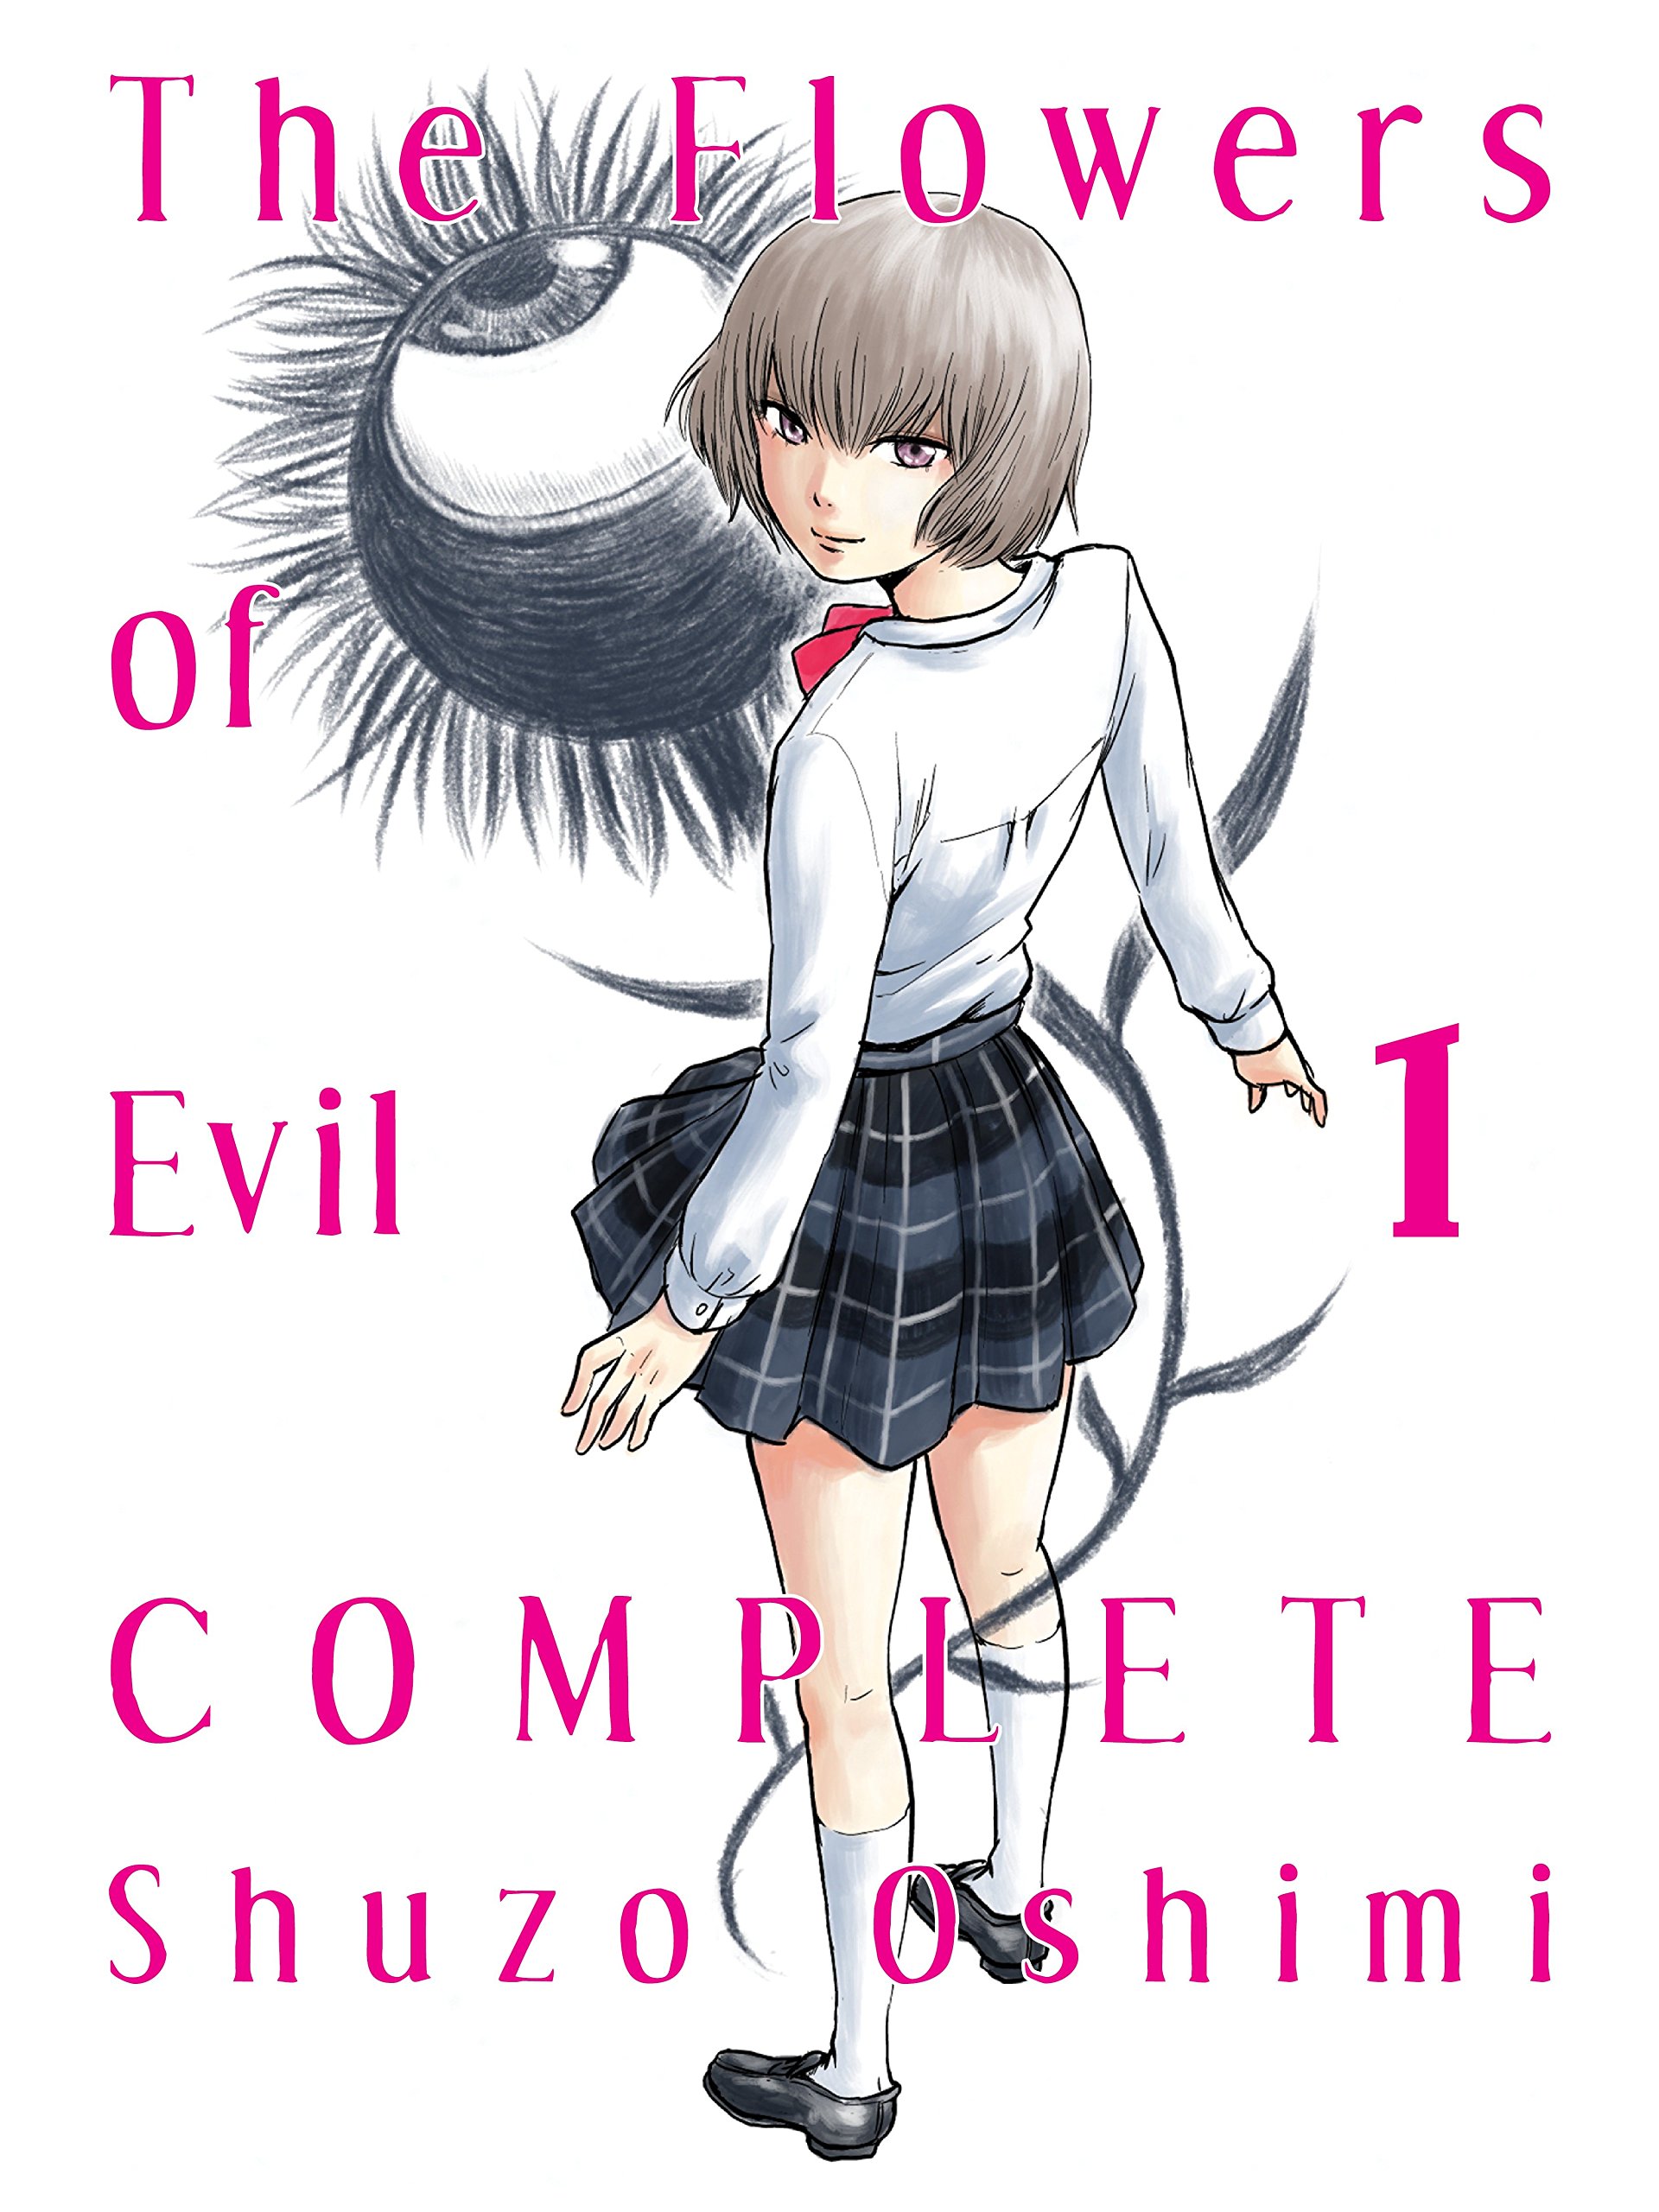 Flowers of Evil Complete Edition Manga Volume 1 (Mature)